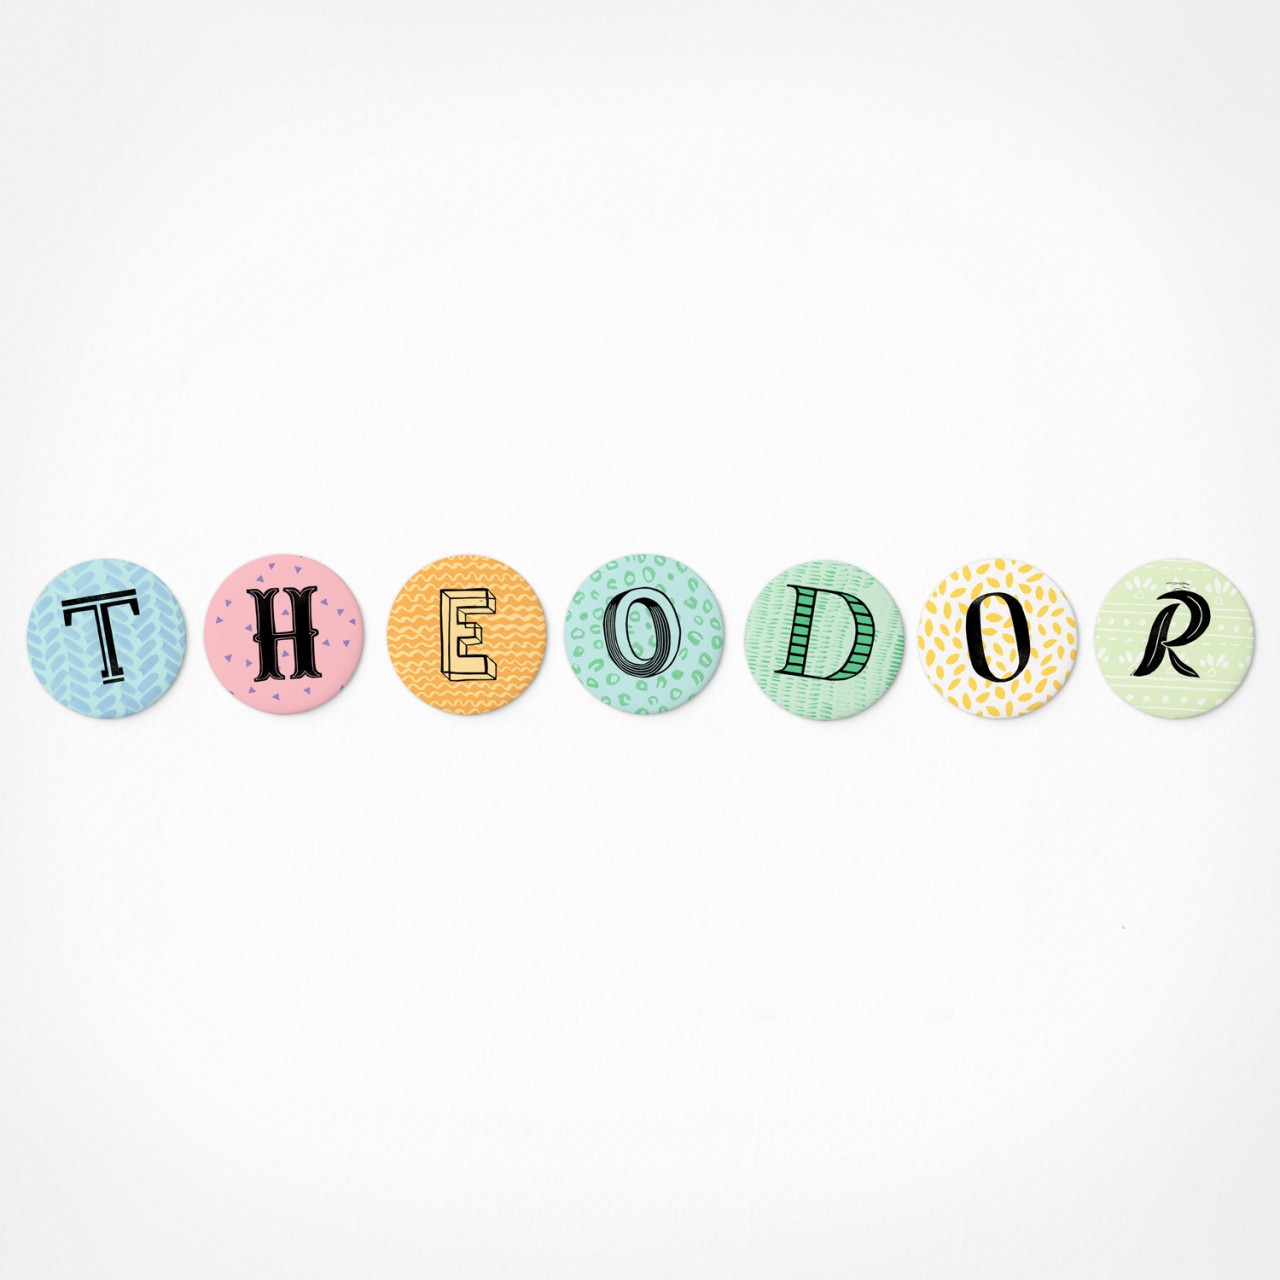 Theodor | Magnetbuchstaben Set | 7 Magnete